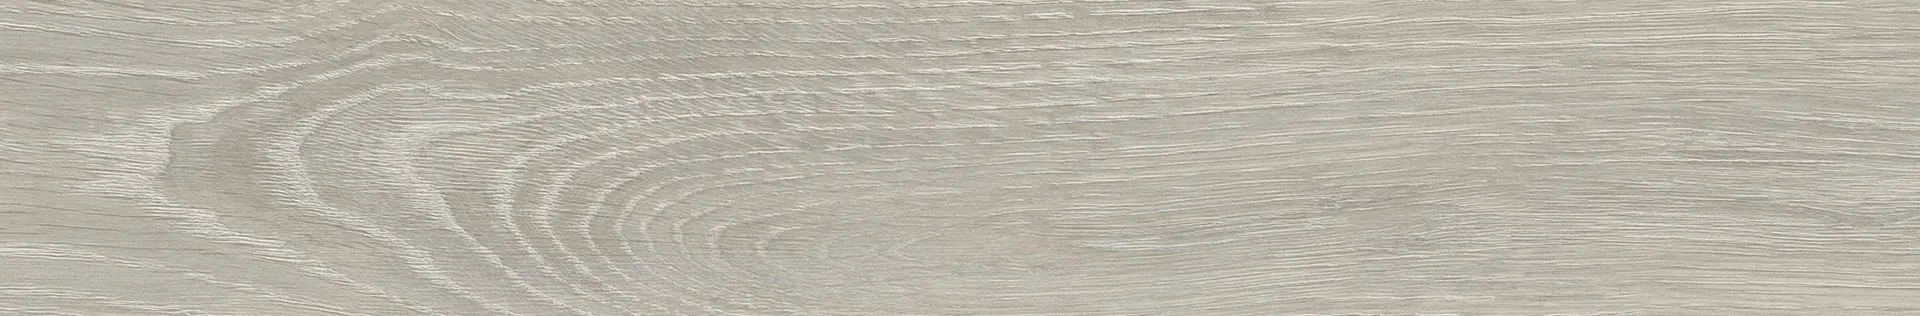 Gerflor vinyylilankku Creation 55 Solid Clic Charming Oak Grey - 1